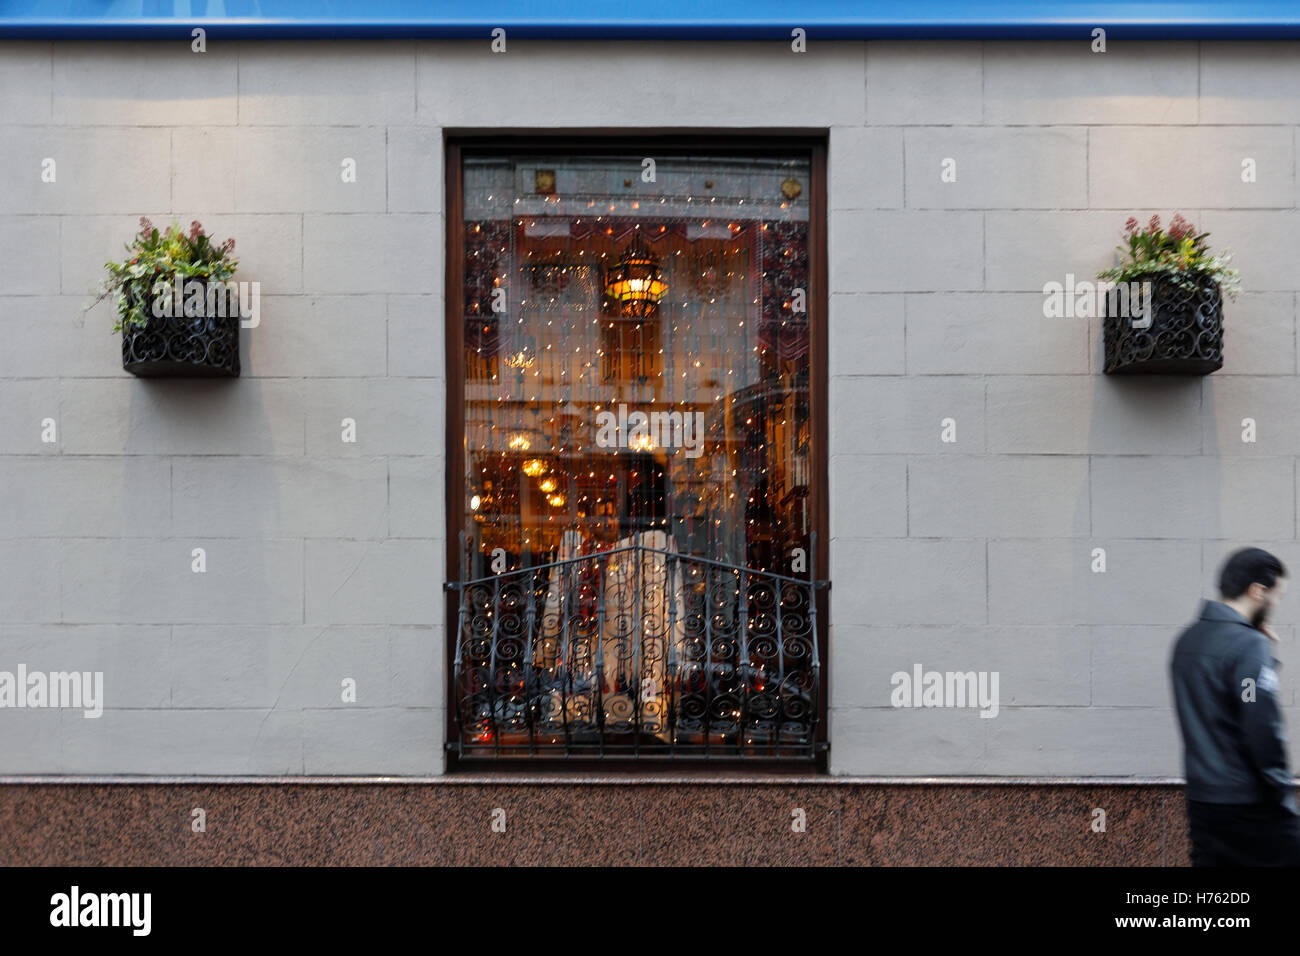 Glasgow ristorante windows accesa fino a Natale Foto Stock